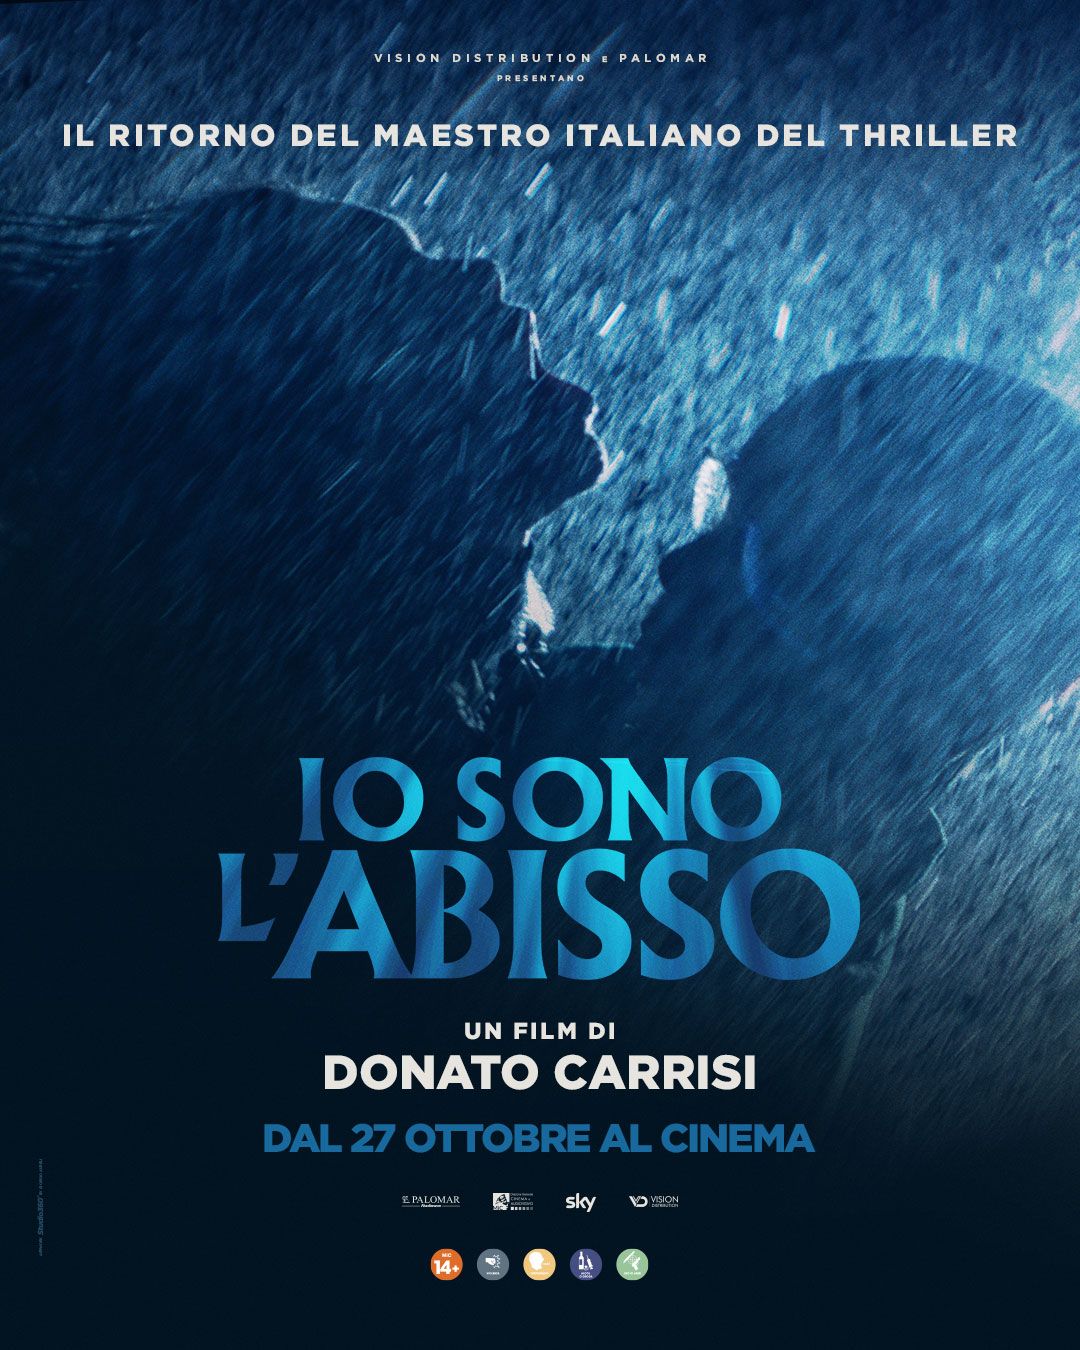 Donato Carrisi: Ho girato un film «senza attori», per raccontare come nasce la paura&#8230;- immagine 2